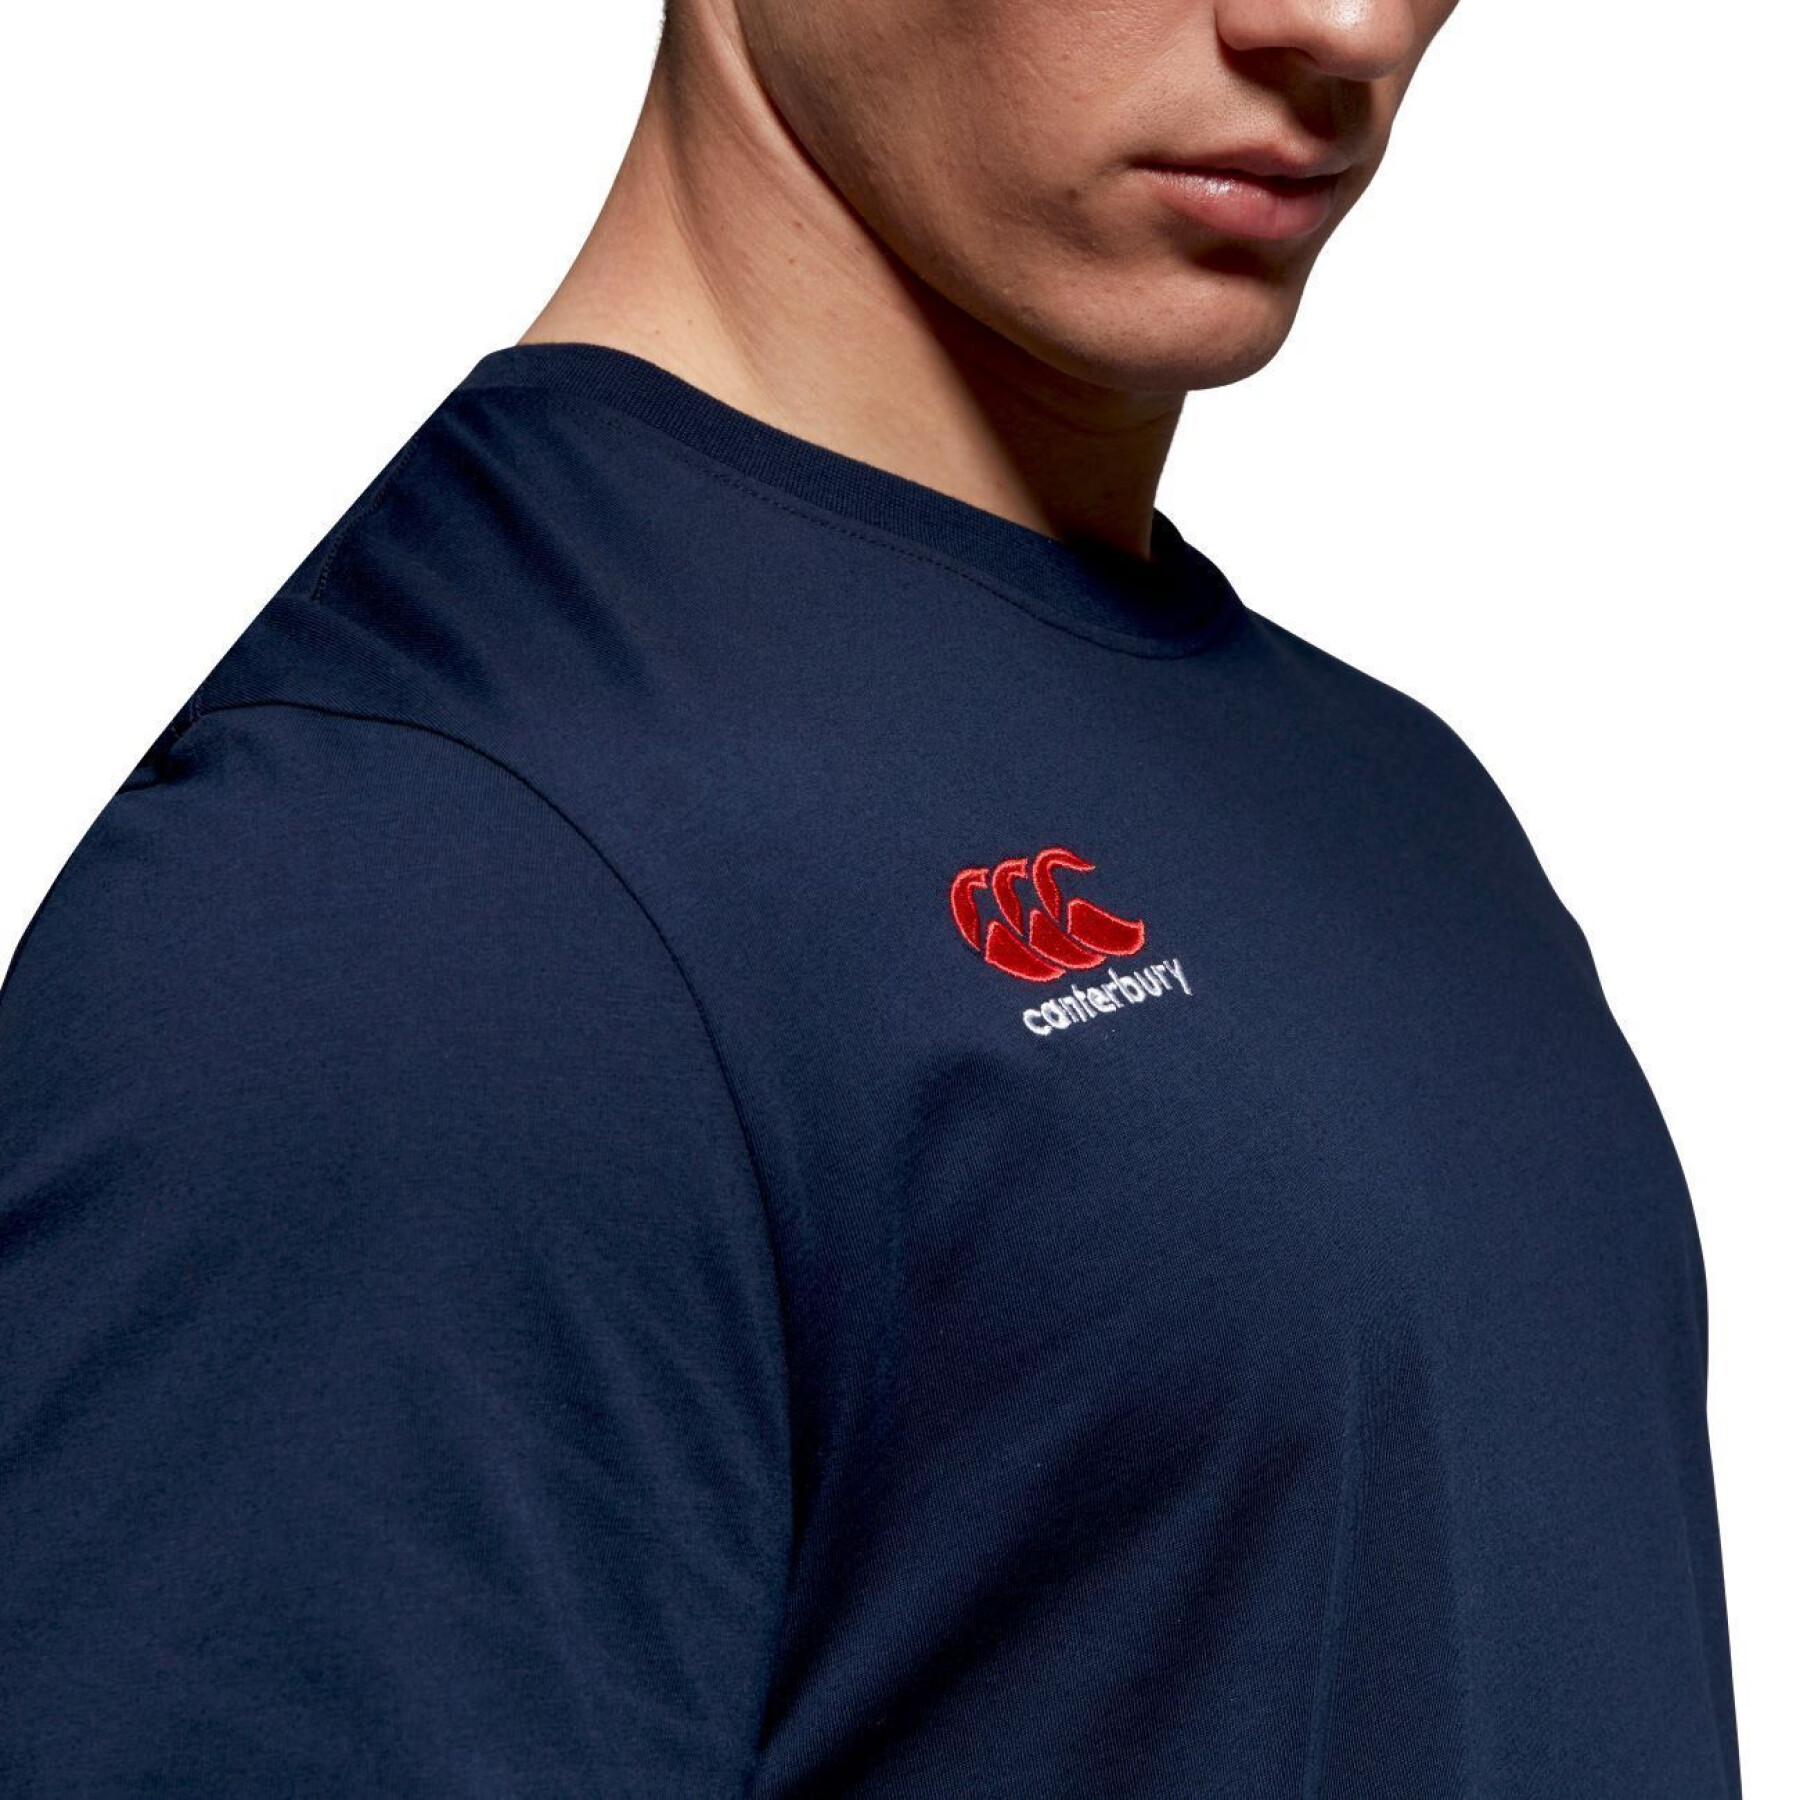 T-shirt de algodão com pequeno logótipo Canterbury